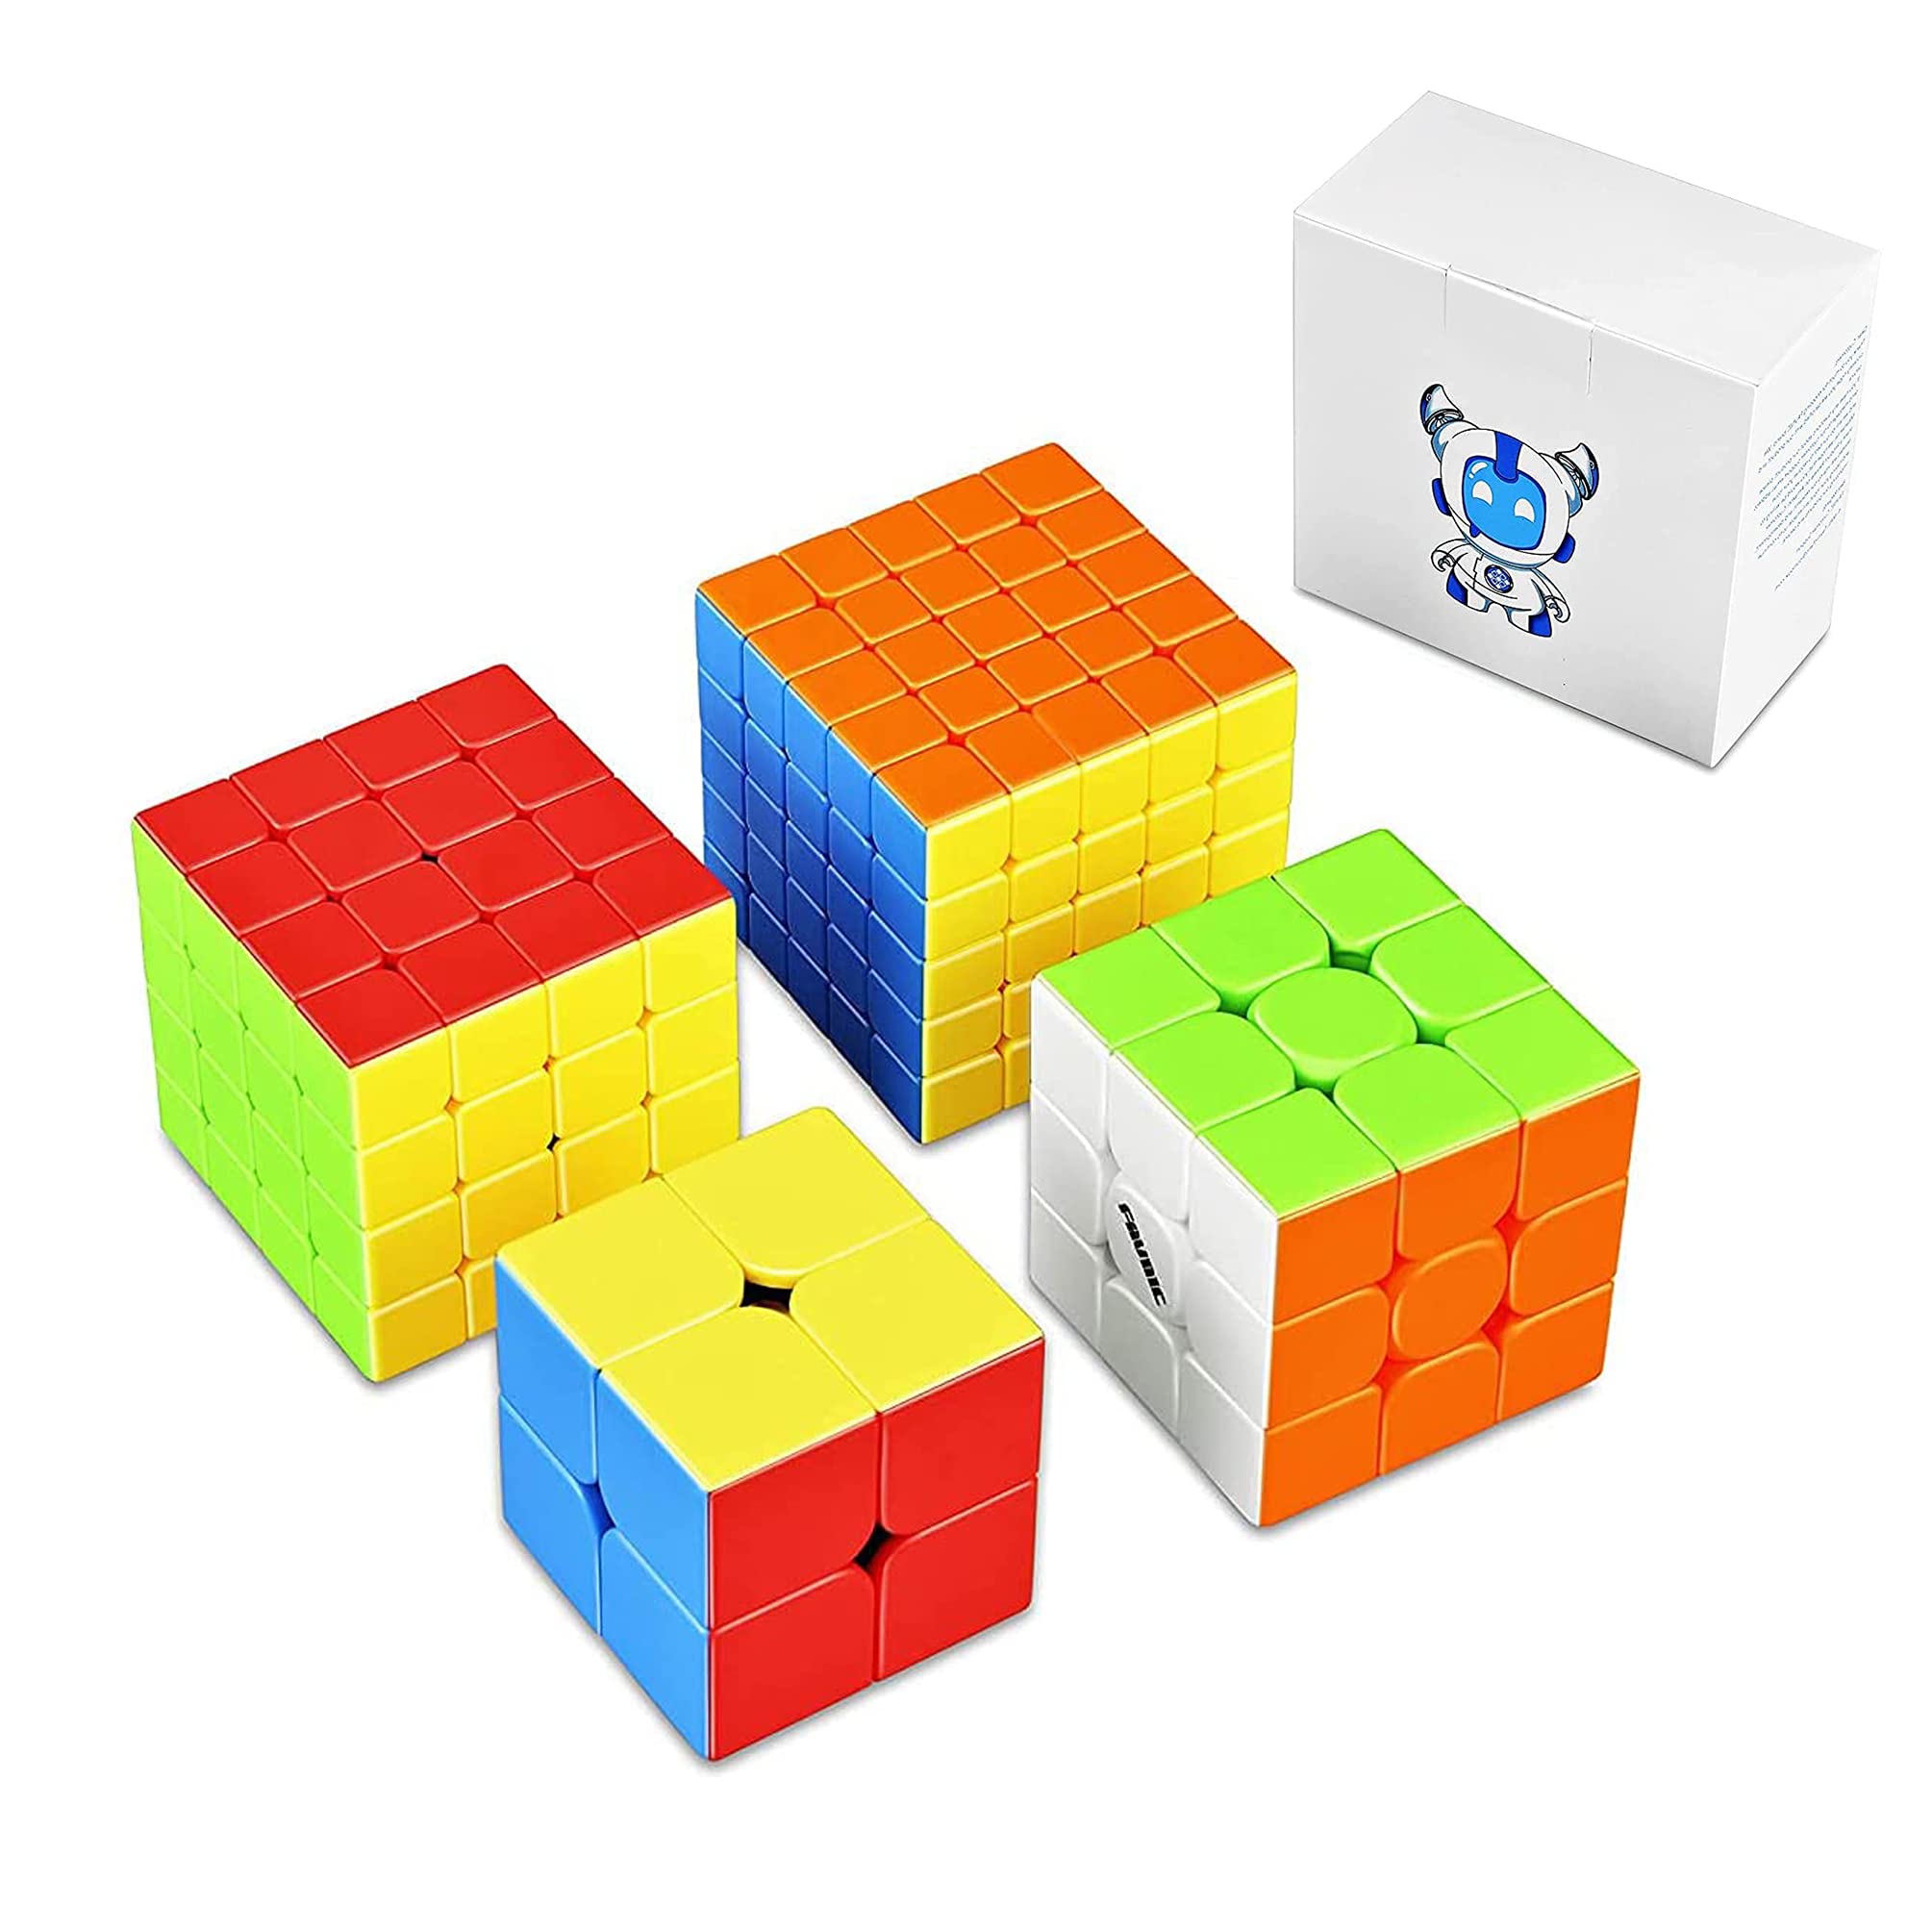 マジックキューブ 競技版 2 2 3 3 4 4 5 5 魔方 プロ向け 回転スムーズ 安定感 知育玩具 Magic Cube 4個セット ステッカーレス 子供 ギフト クリスマス プレゼント